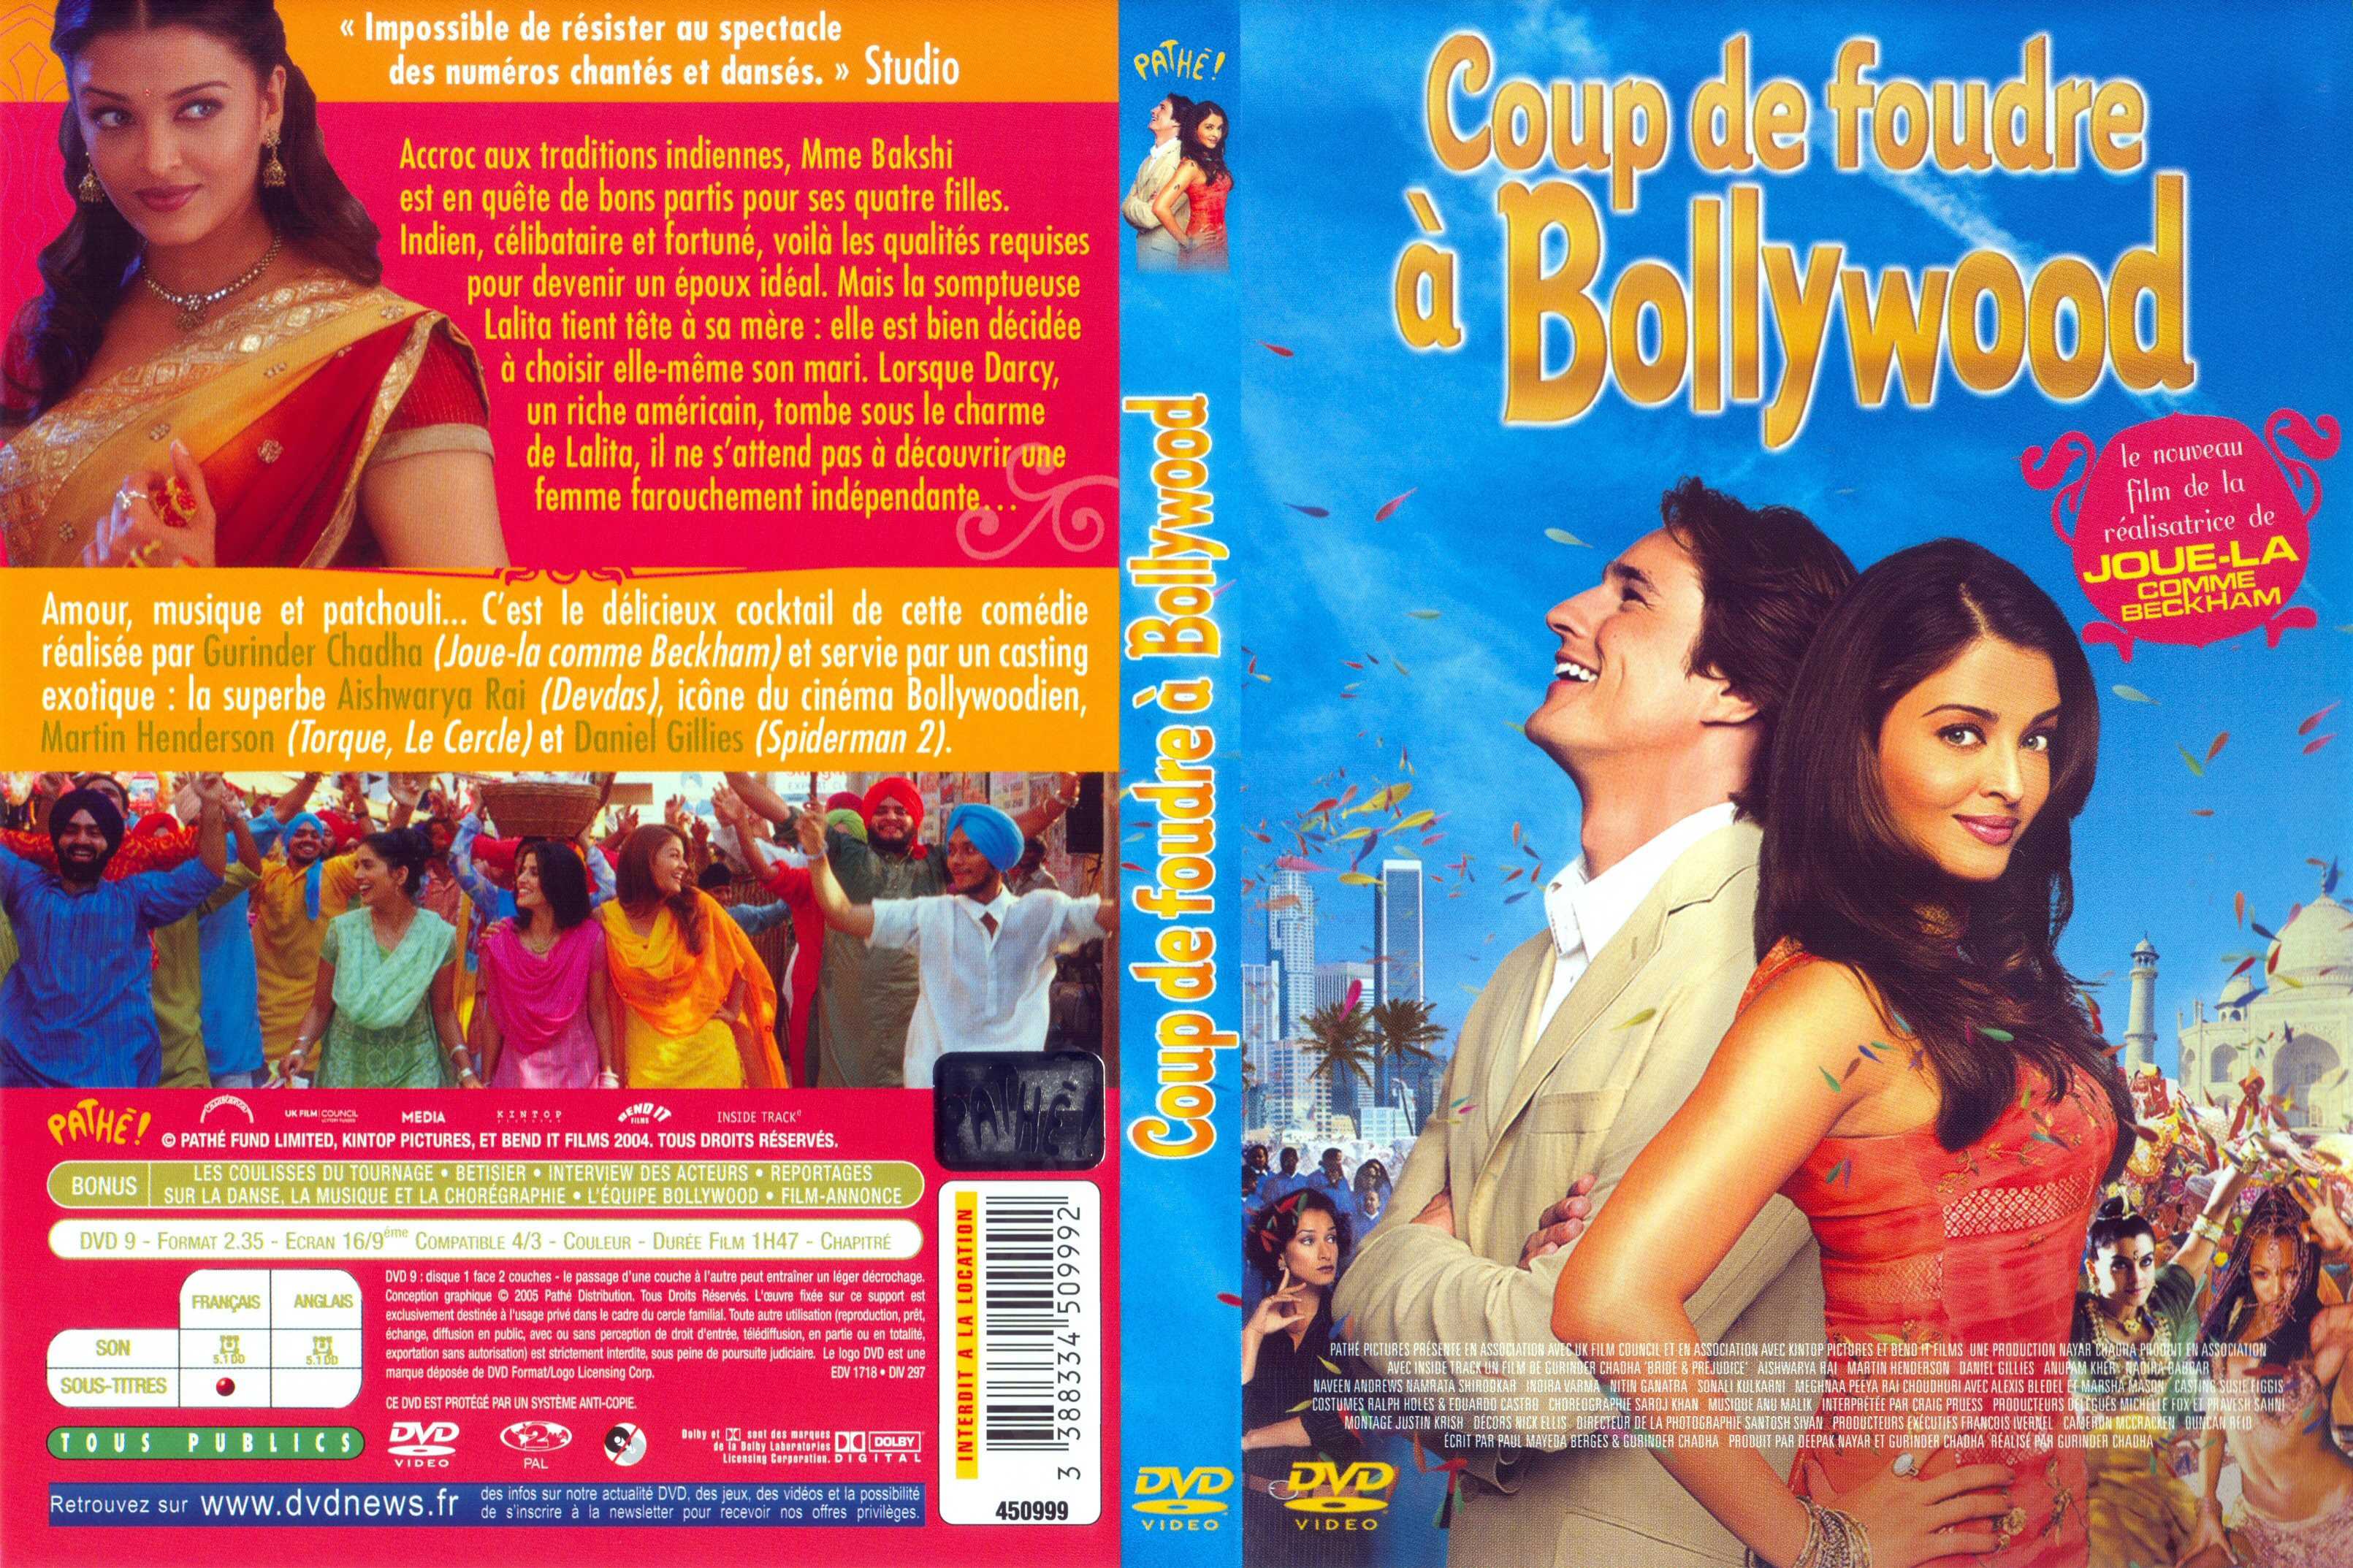 Jaquette DVD Coup de foudre  Bollywood